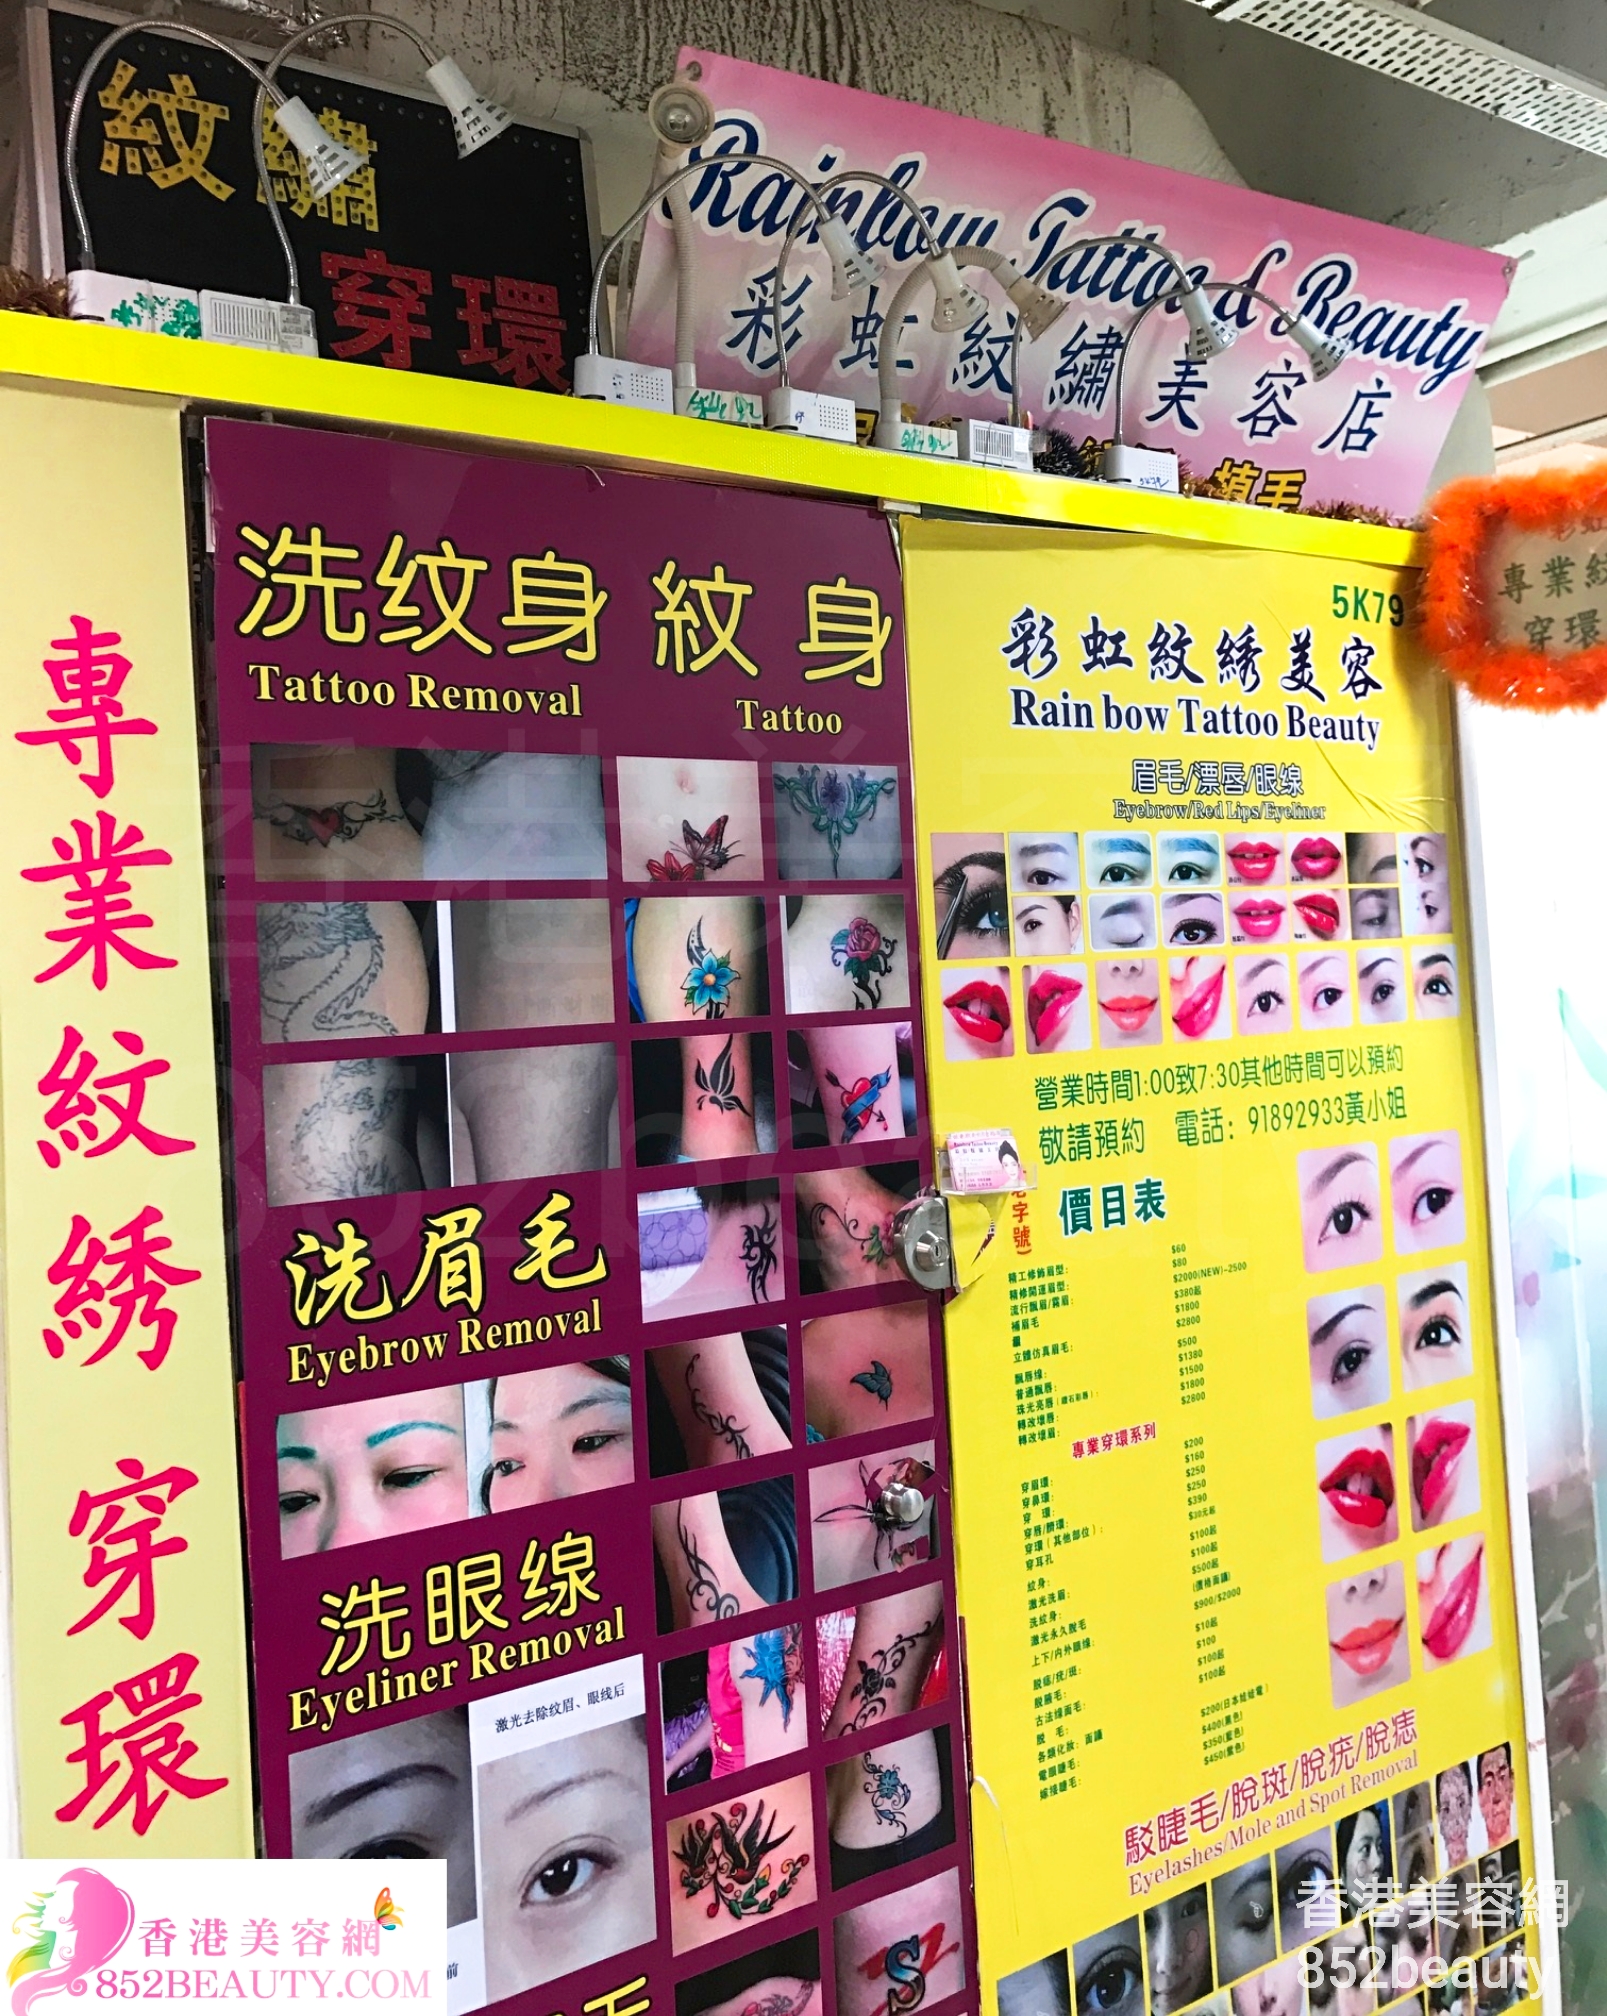 Eyelashes: Rainbow Tattoo & Beauty 彩虹紋繡美容店